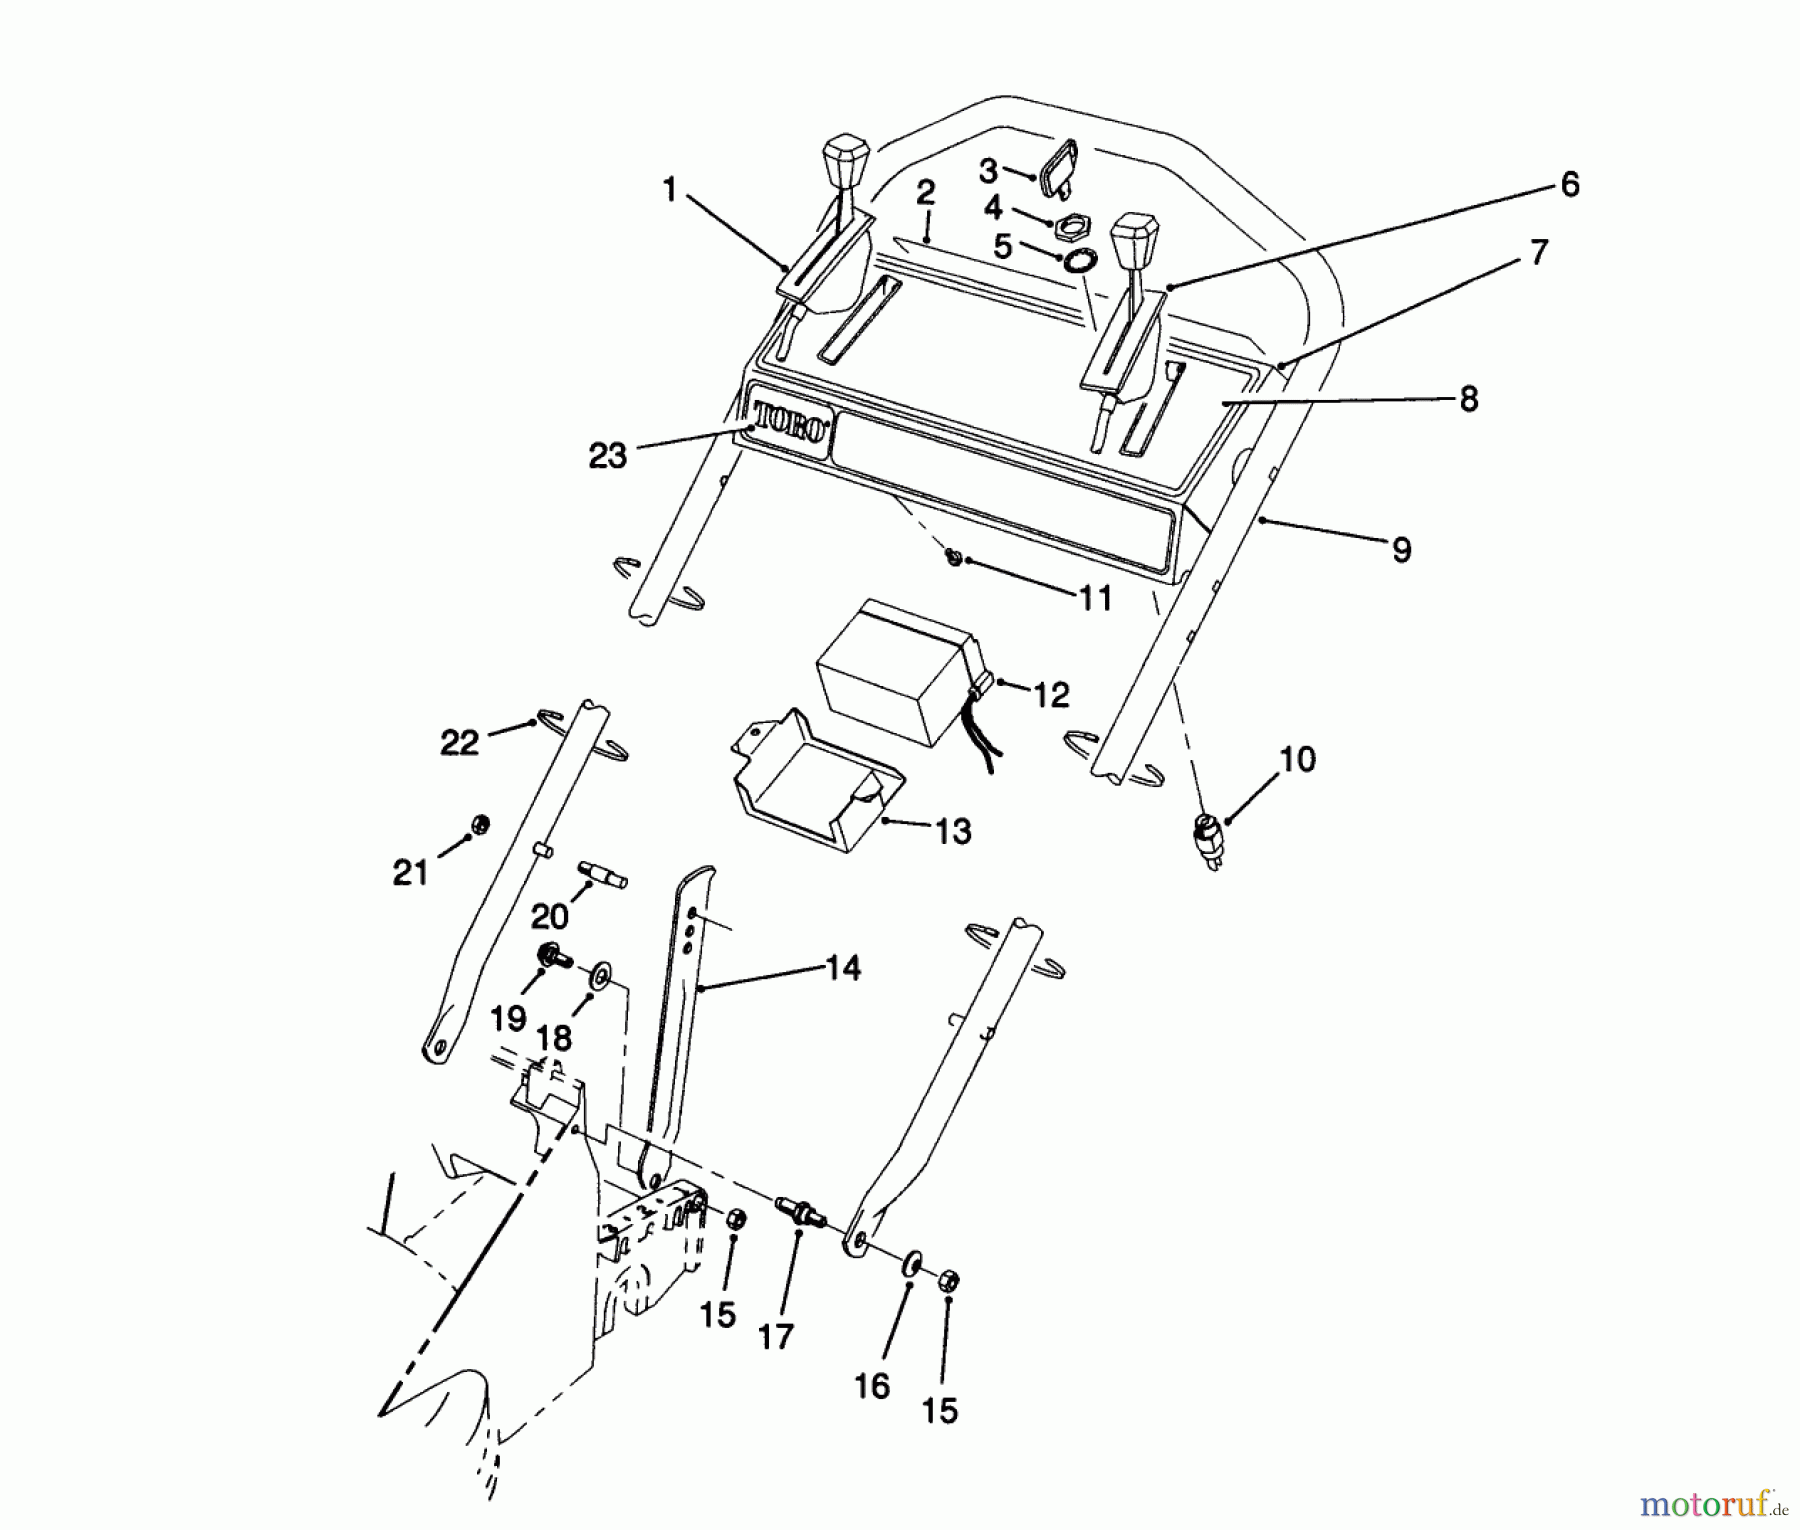  Toro Neu Mowers, Walk-Behind Seite 2 26625BG - Toro Lawnmower, 1990 (0000001-0999999) HANDLE ASSEMBLY